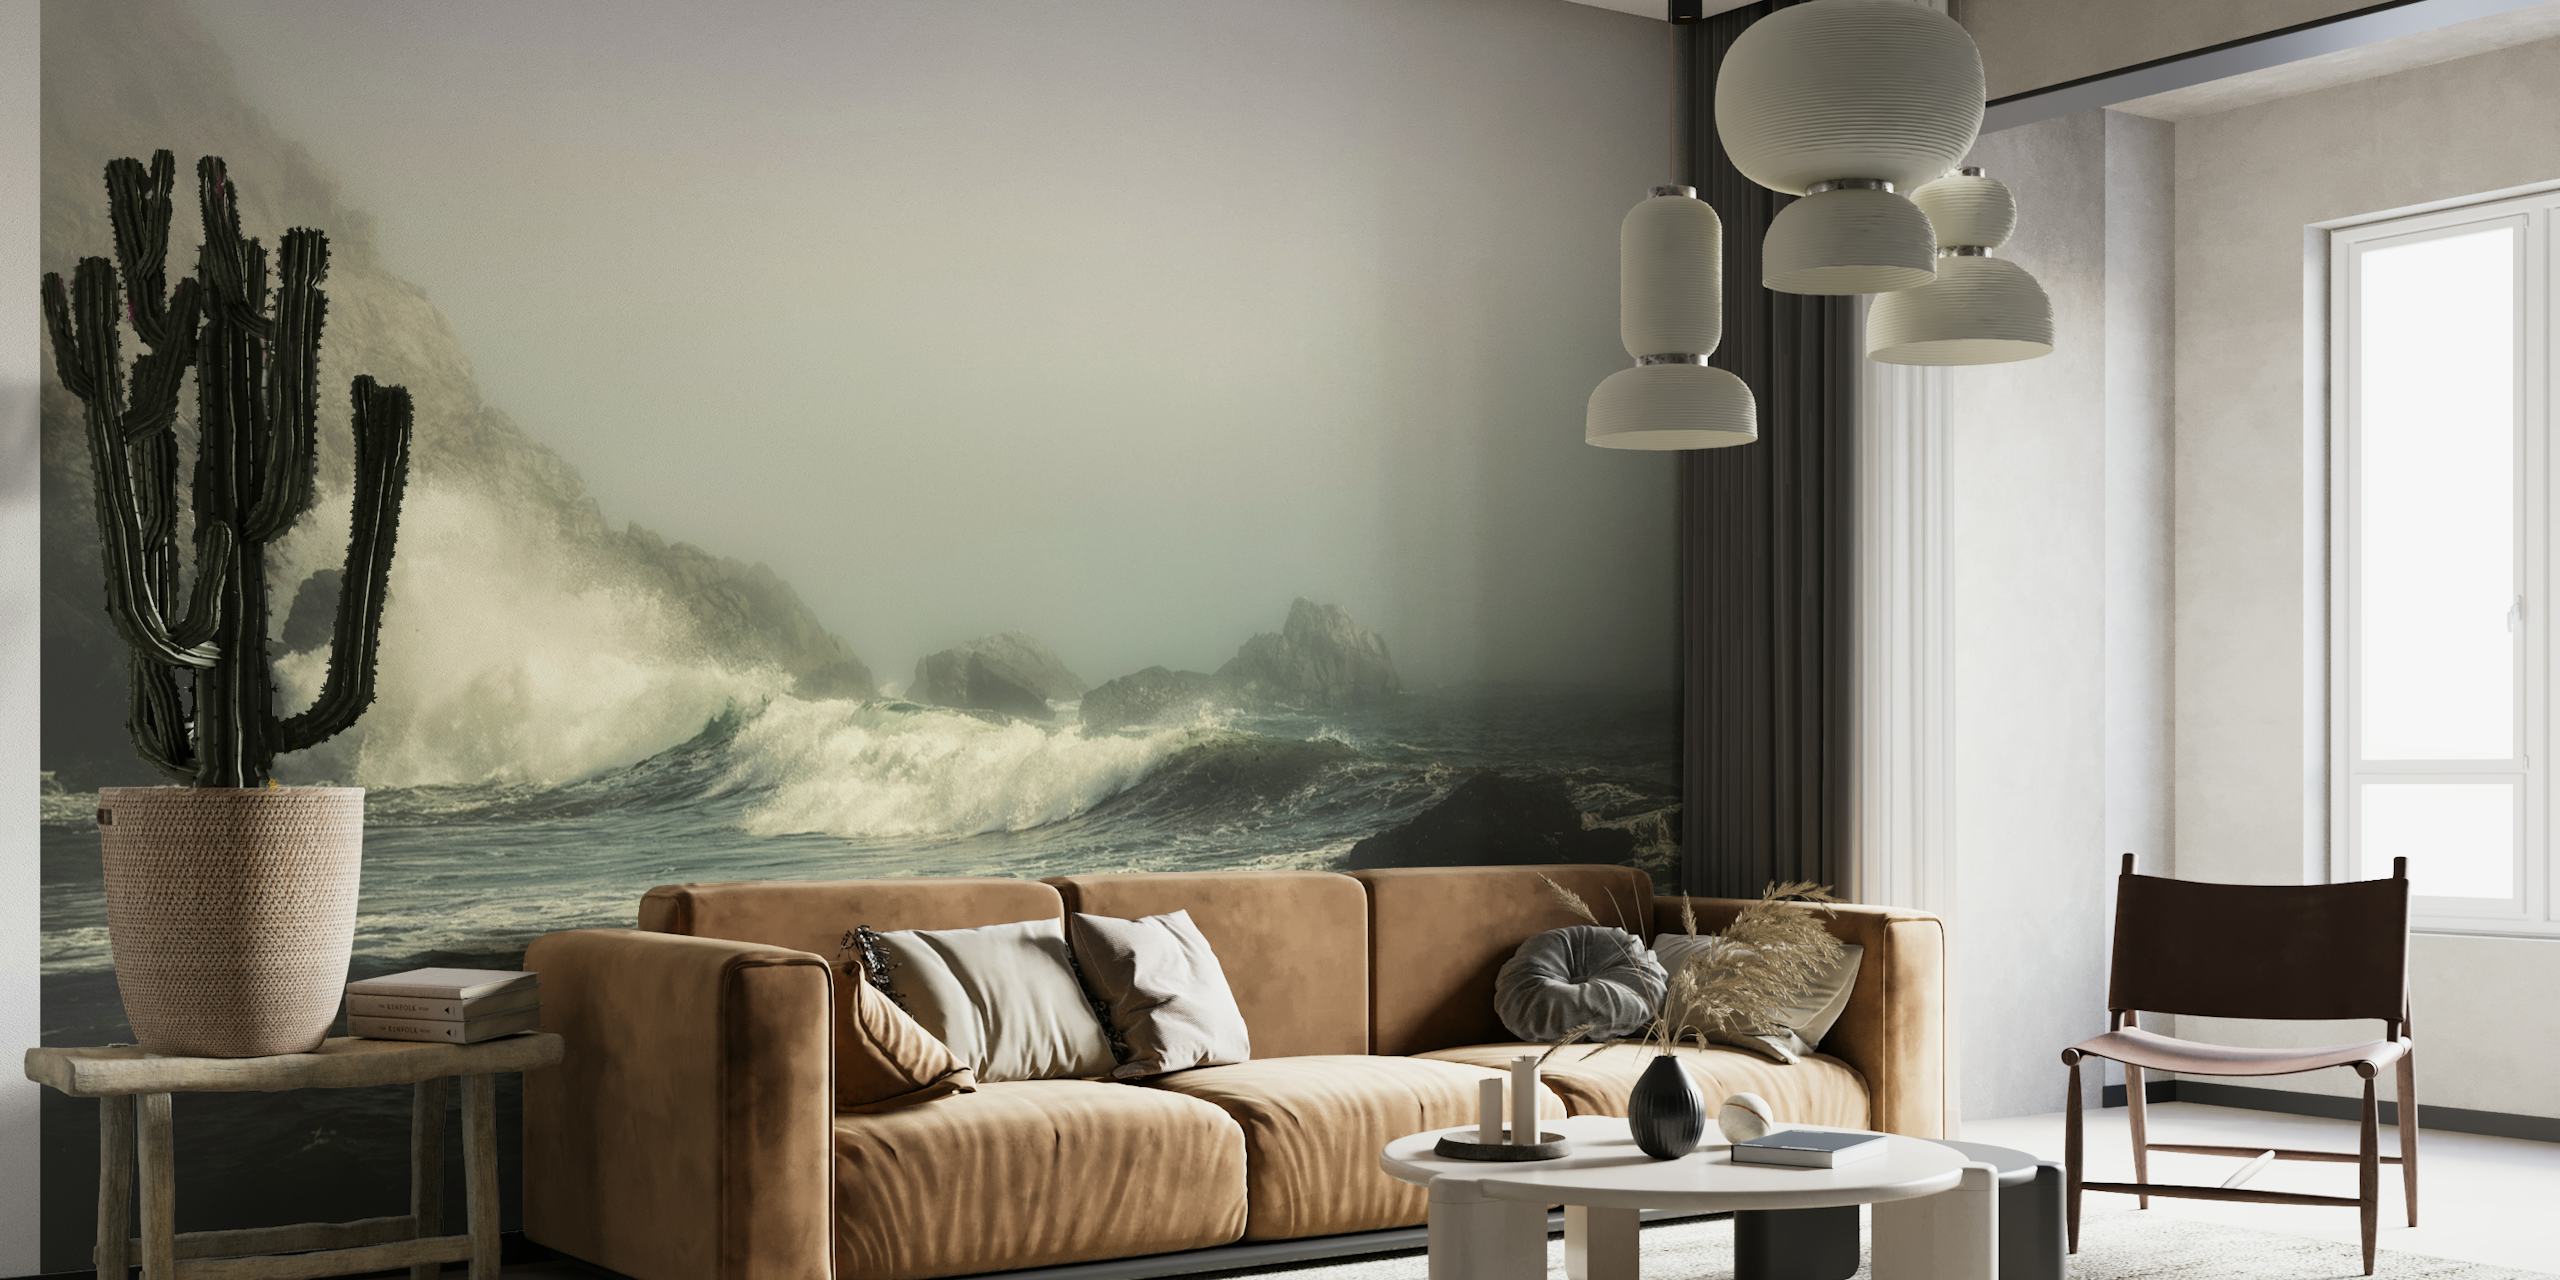 Fotomural vinílico de paisagem marítima com névoa e ondas quebrando contra rochas